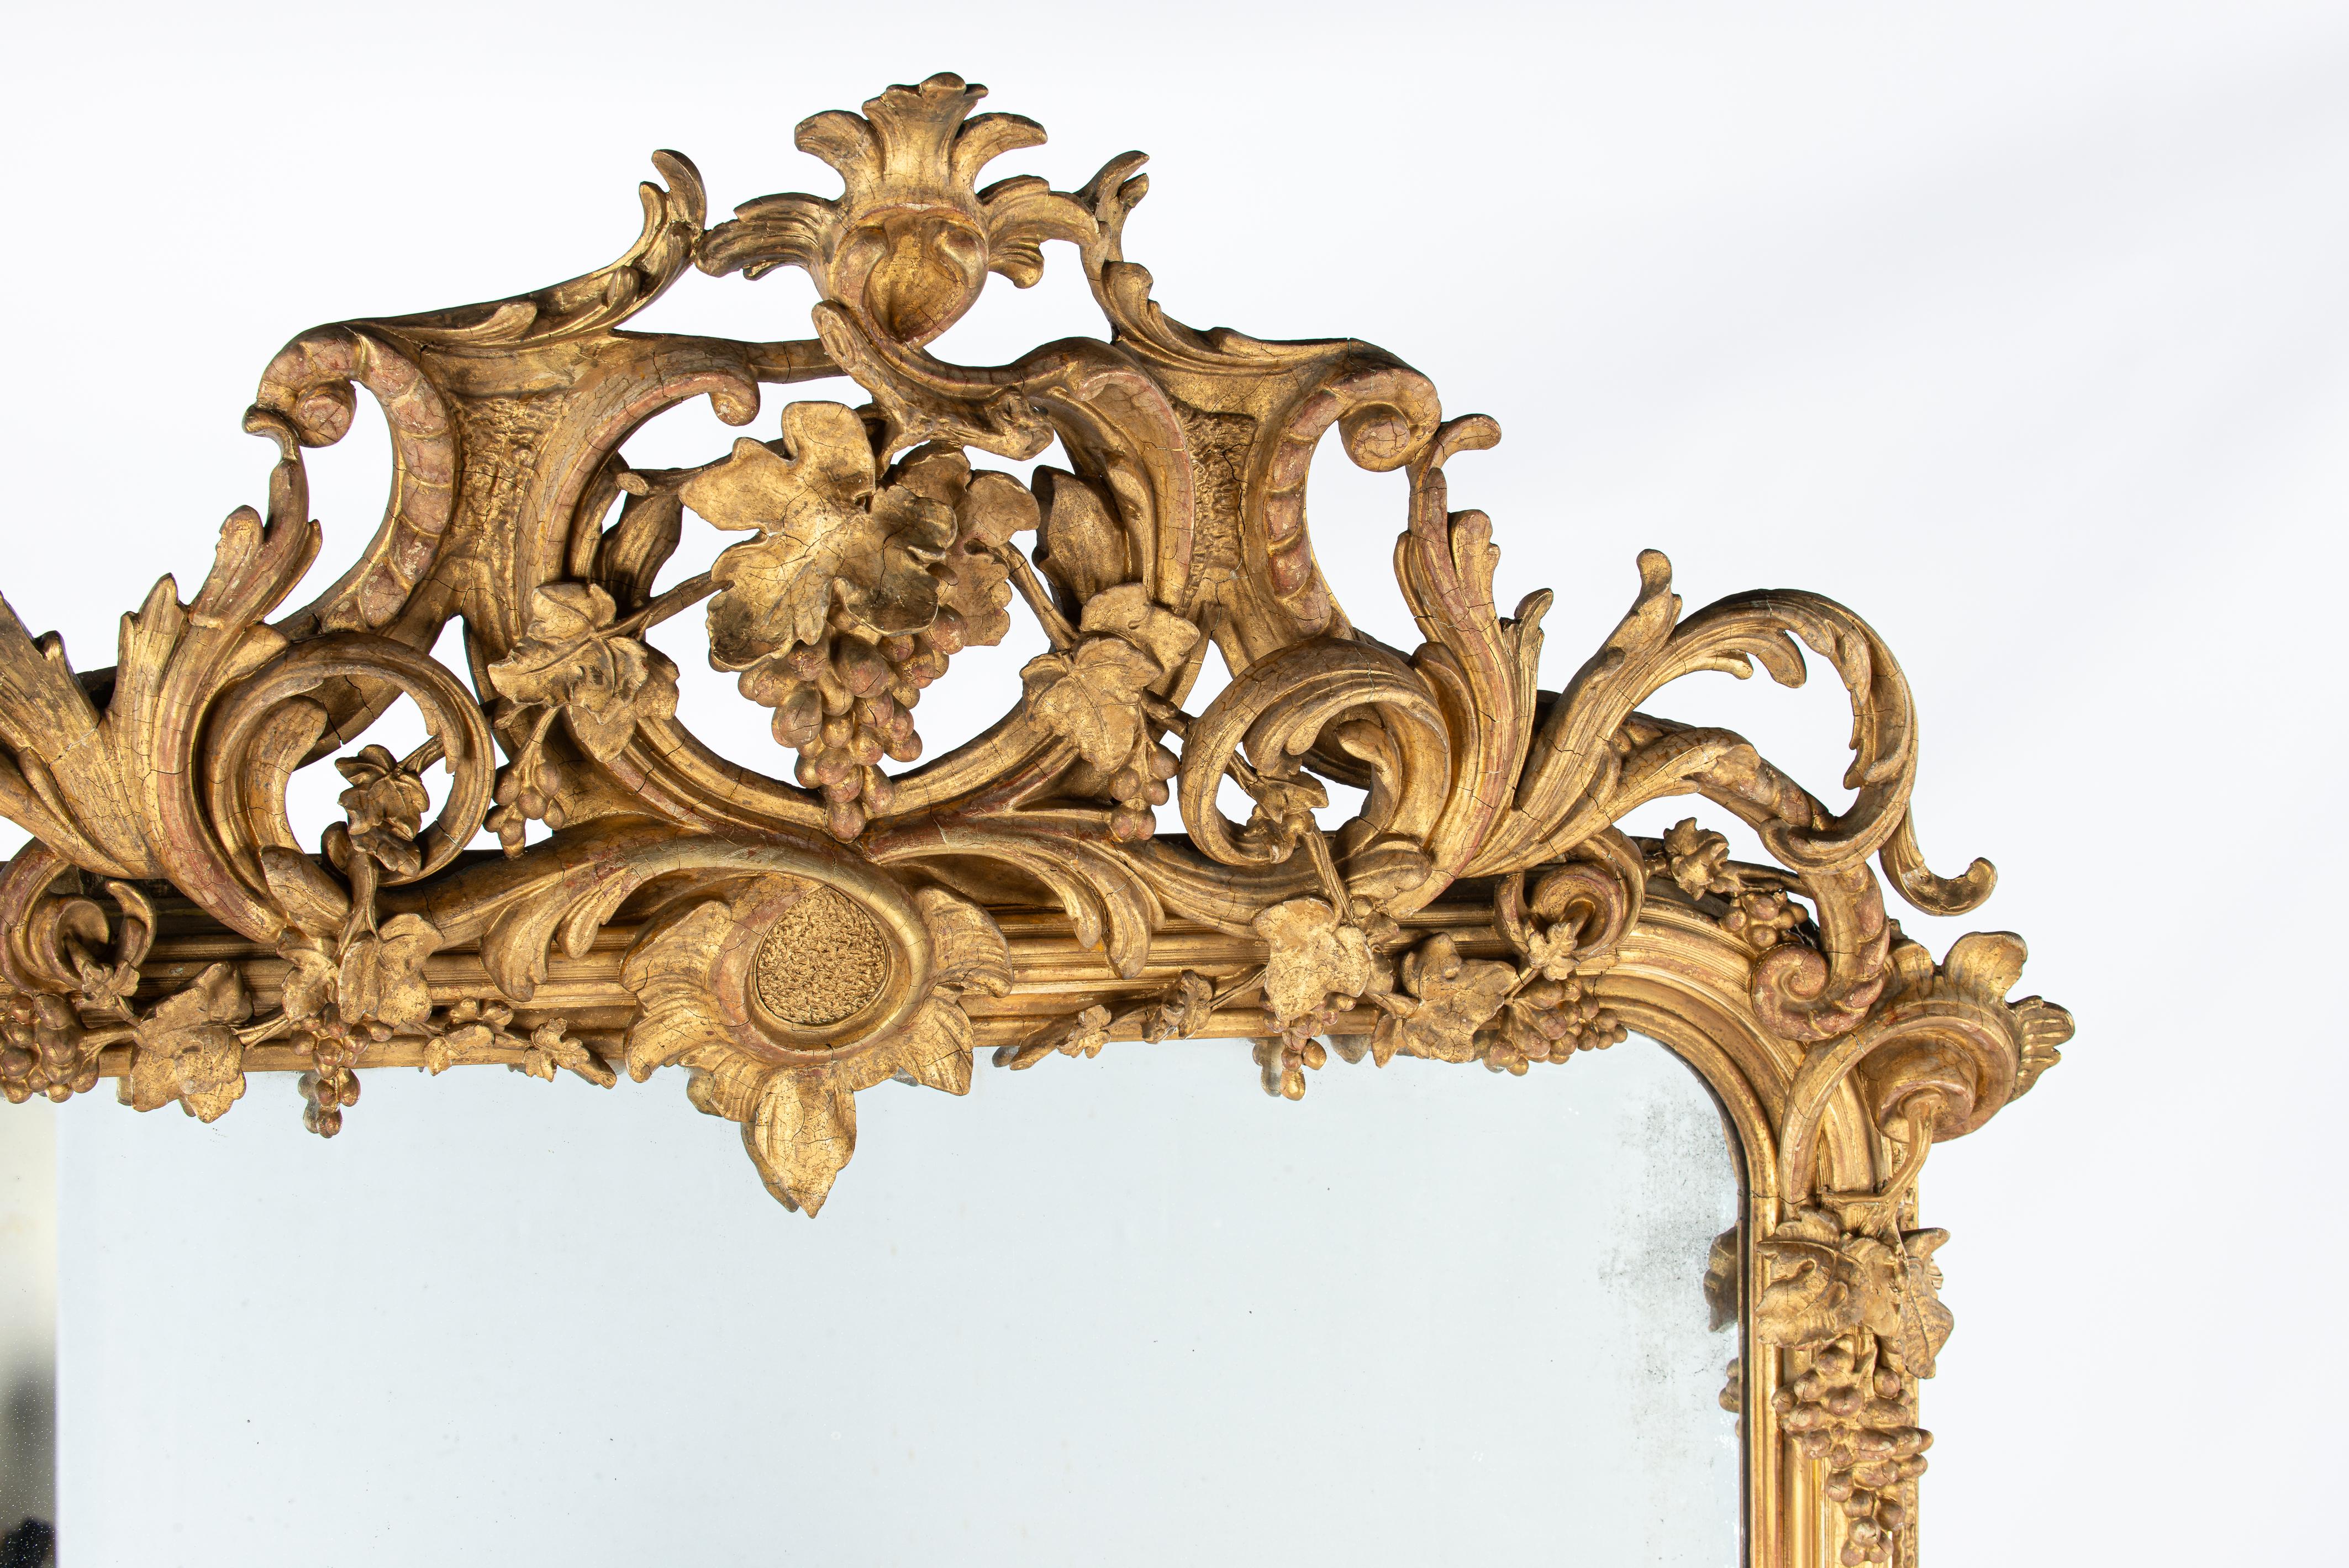 Dieser monumentale und reich verzierte Spiegel wurde zu Beginn des 19. Jahrhunderts, um 1830, in Südfrankreich hergestellt. Der Spiegelrahmen weist die für den Louis-Philippe-Stil typischen abgerundeten oberen Ecken auf. Die außerordentlich üppige